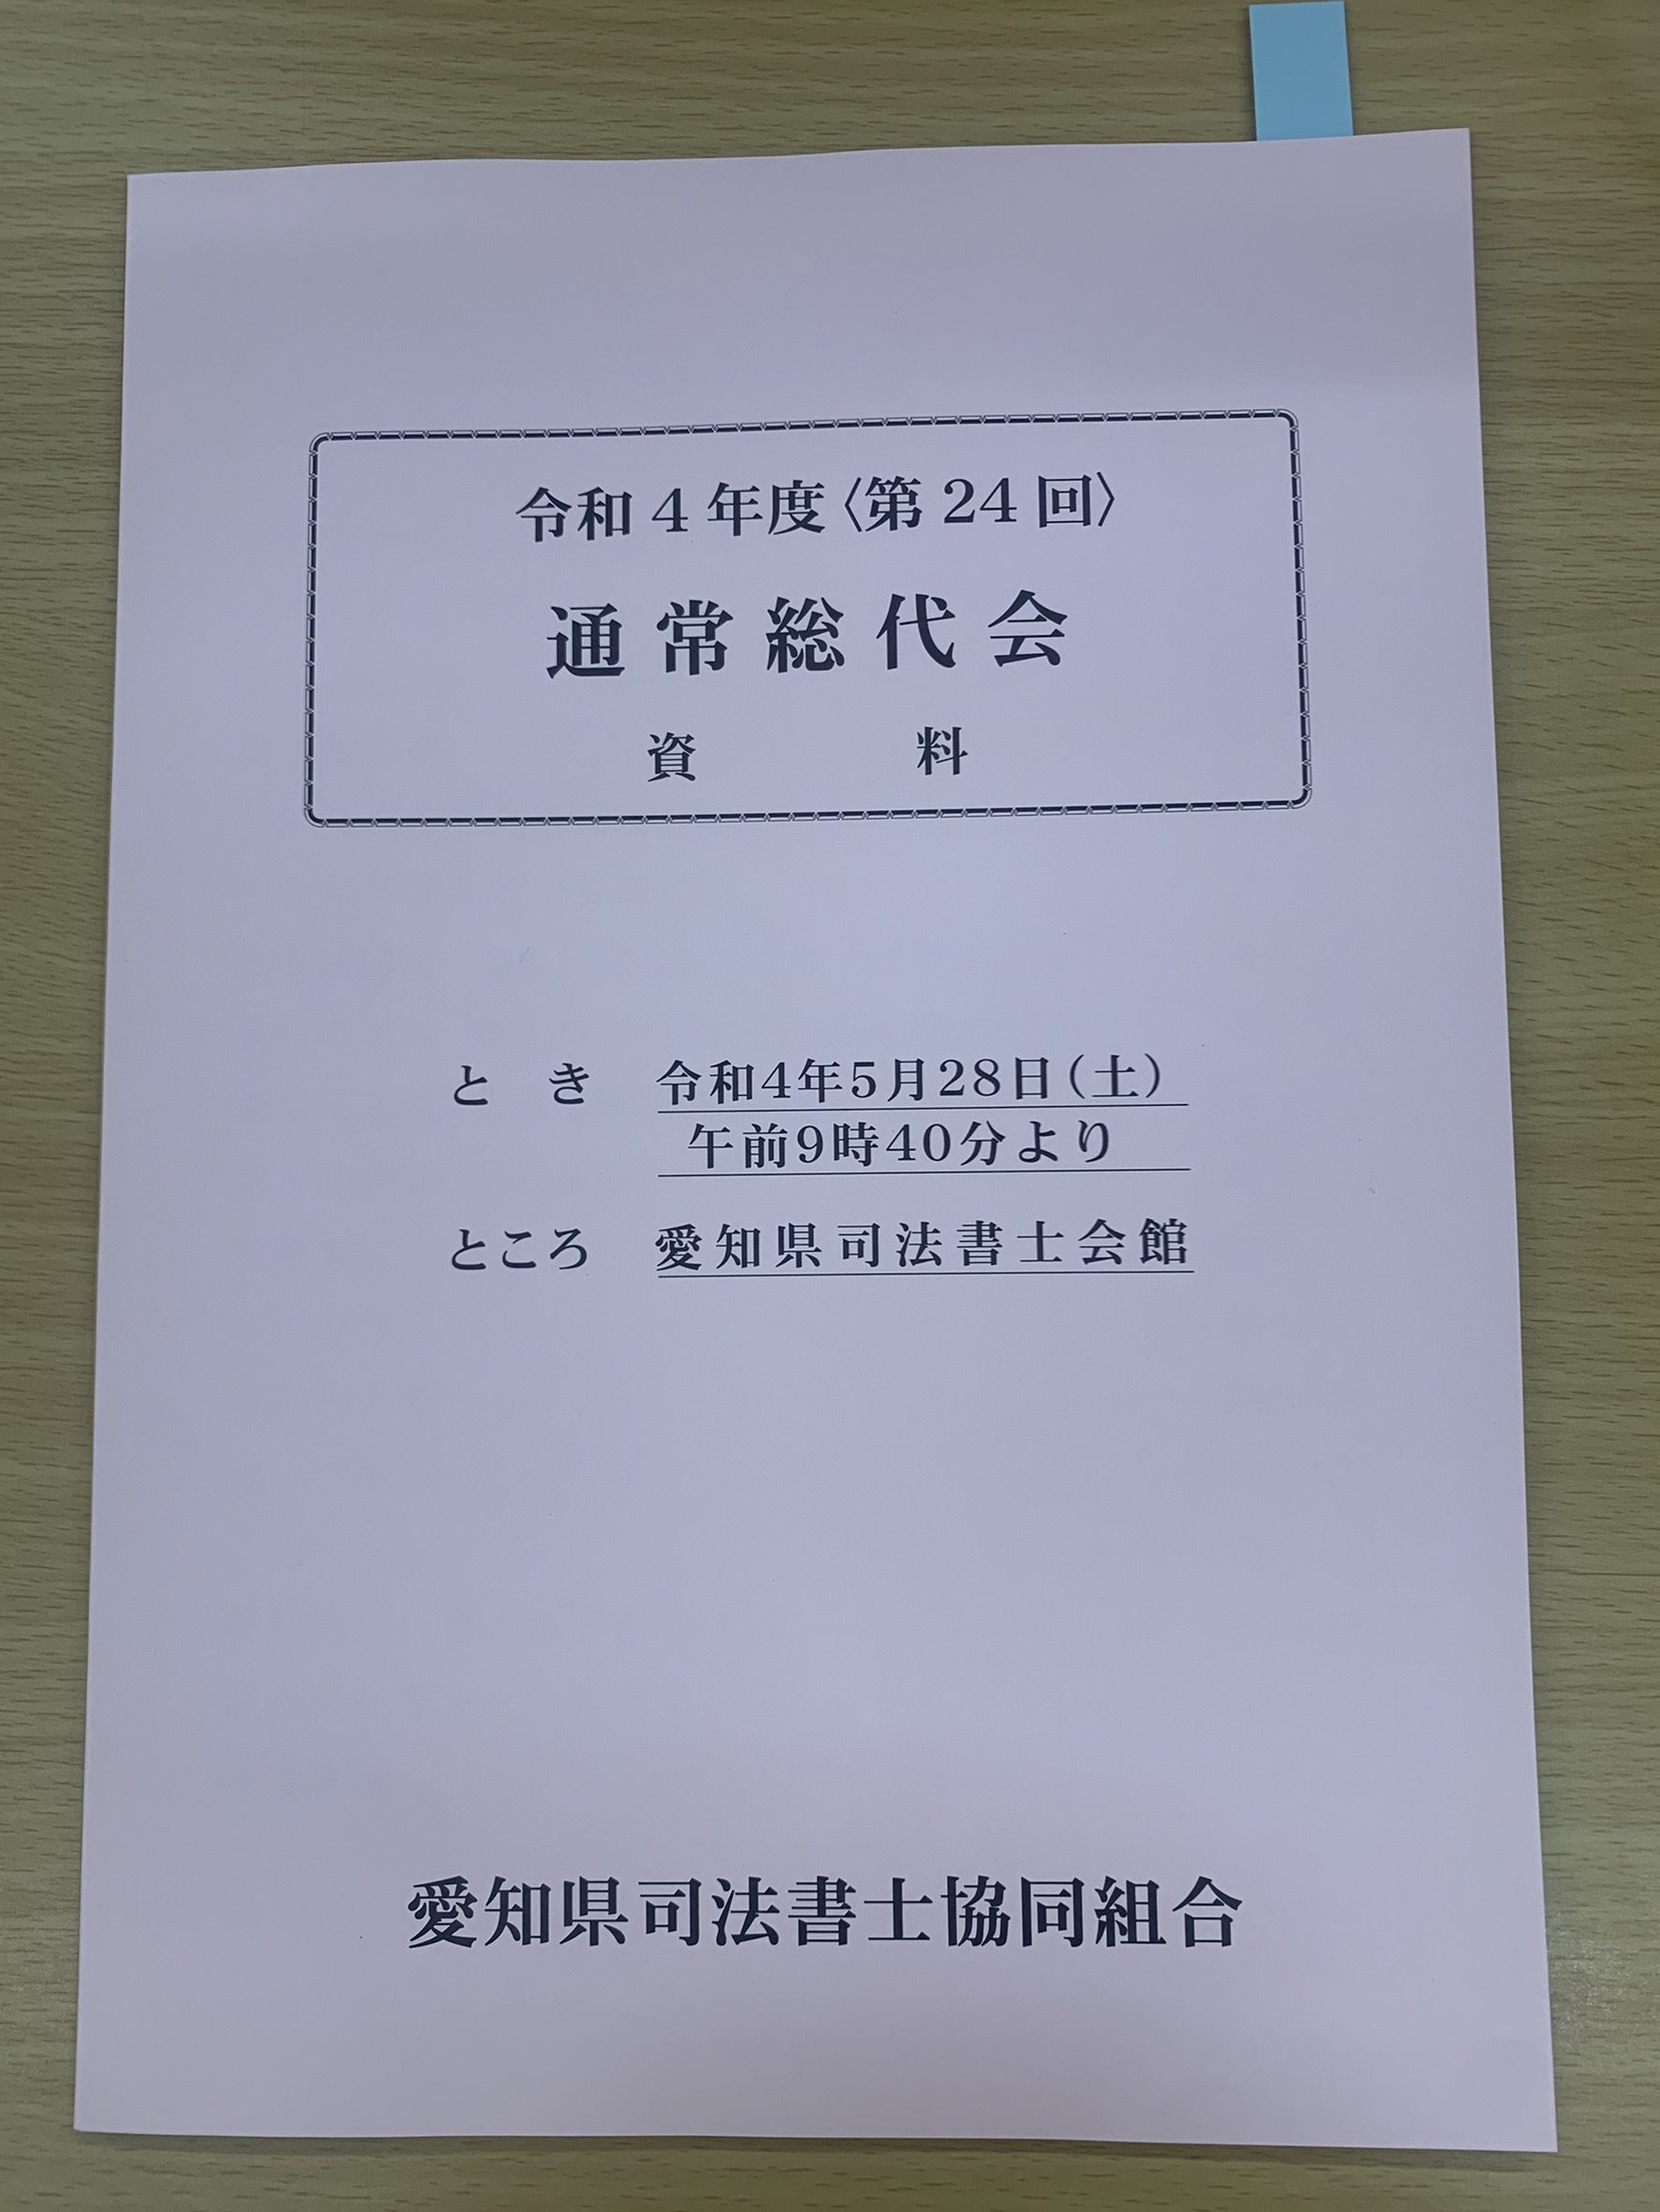 20220628 愛知県司法書士協同組合 特約店として冊子に紹介 (2)